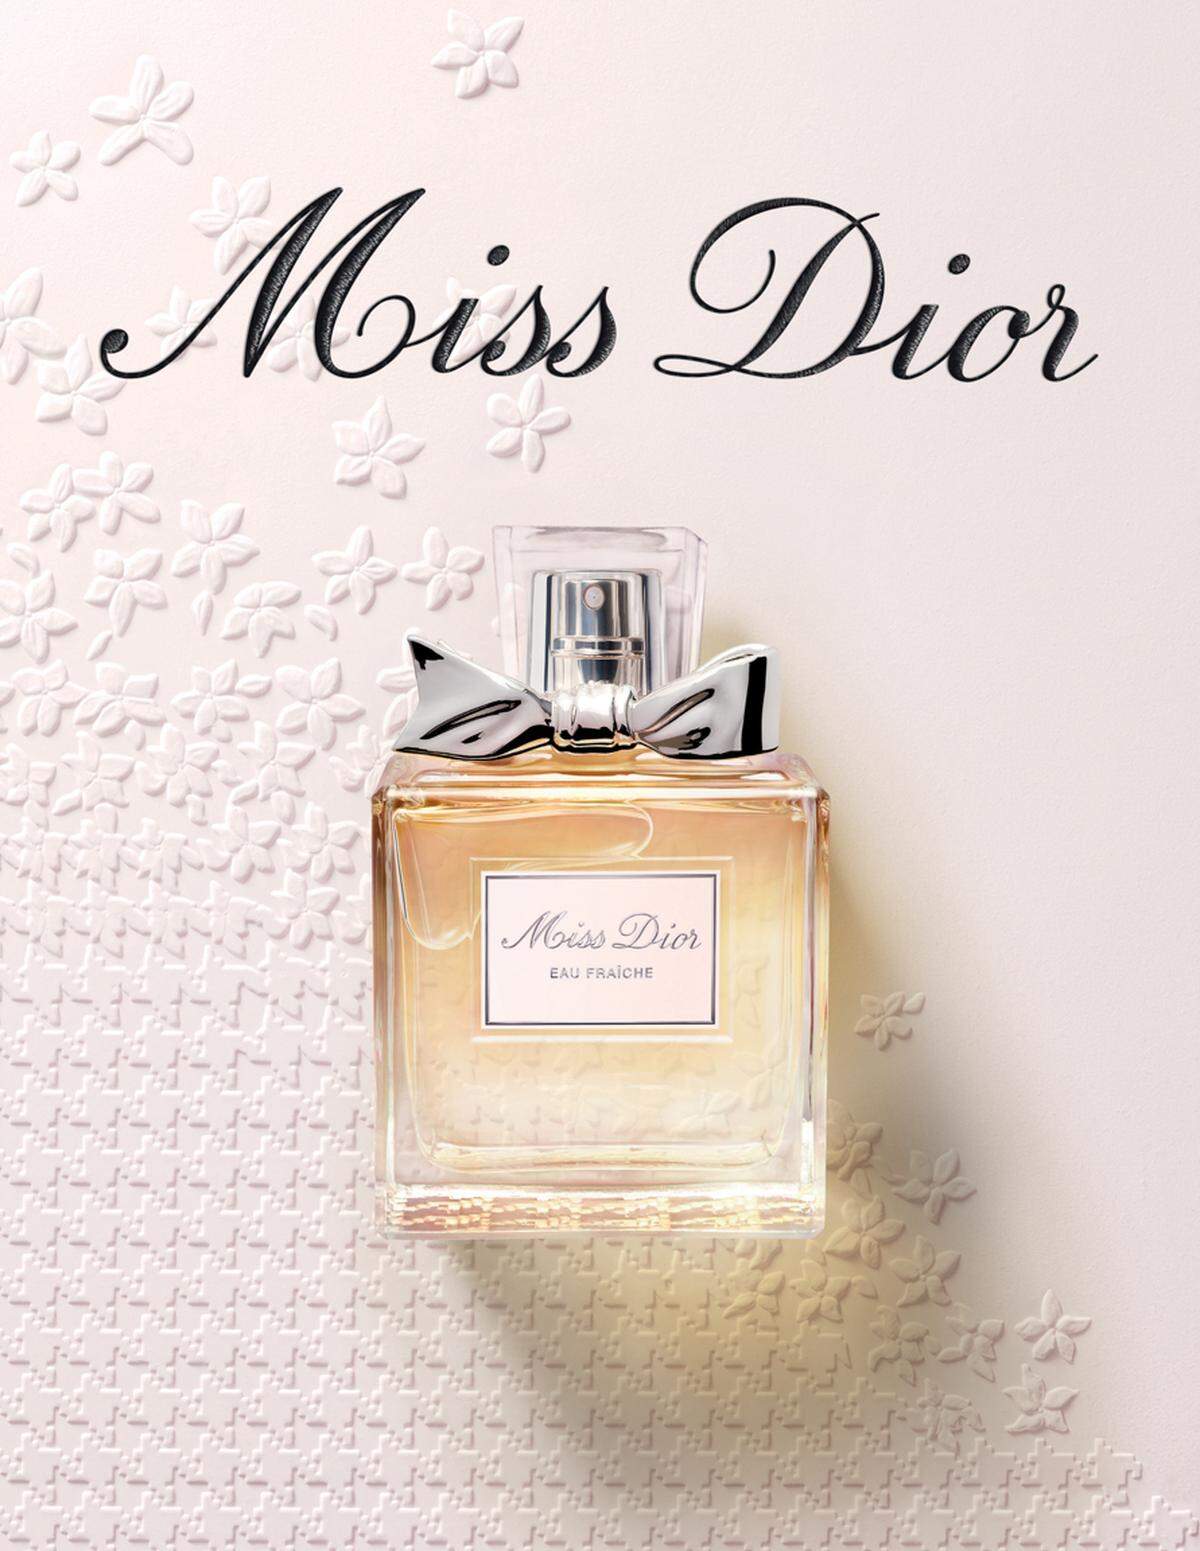 Bereits 1947 kreierte der Couturier Christian Dior "Miss Dior". Blumig, frisch und mit einer holzigen Note zeigt sich die Chypre-Komposition lebhaft und feminin. "Das Parfum ist die unverzichtbare Ergänzung einer weiblichen Erscheinung, es ist der 'Finishing Touch' eines Kleides", pflegte der Couturiers zu sagen. Erhältlich ab 3. April 2012.